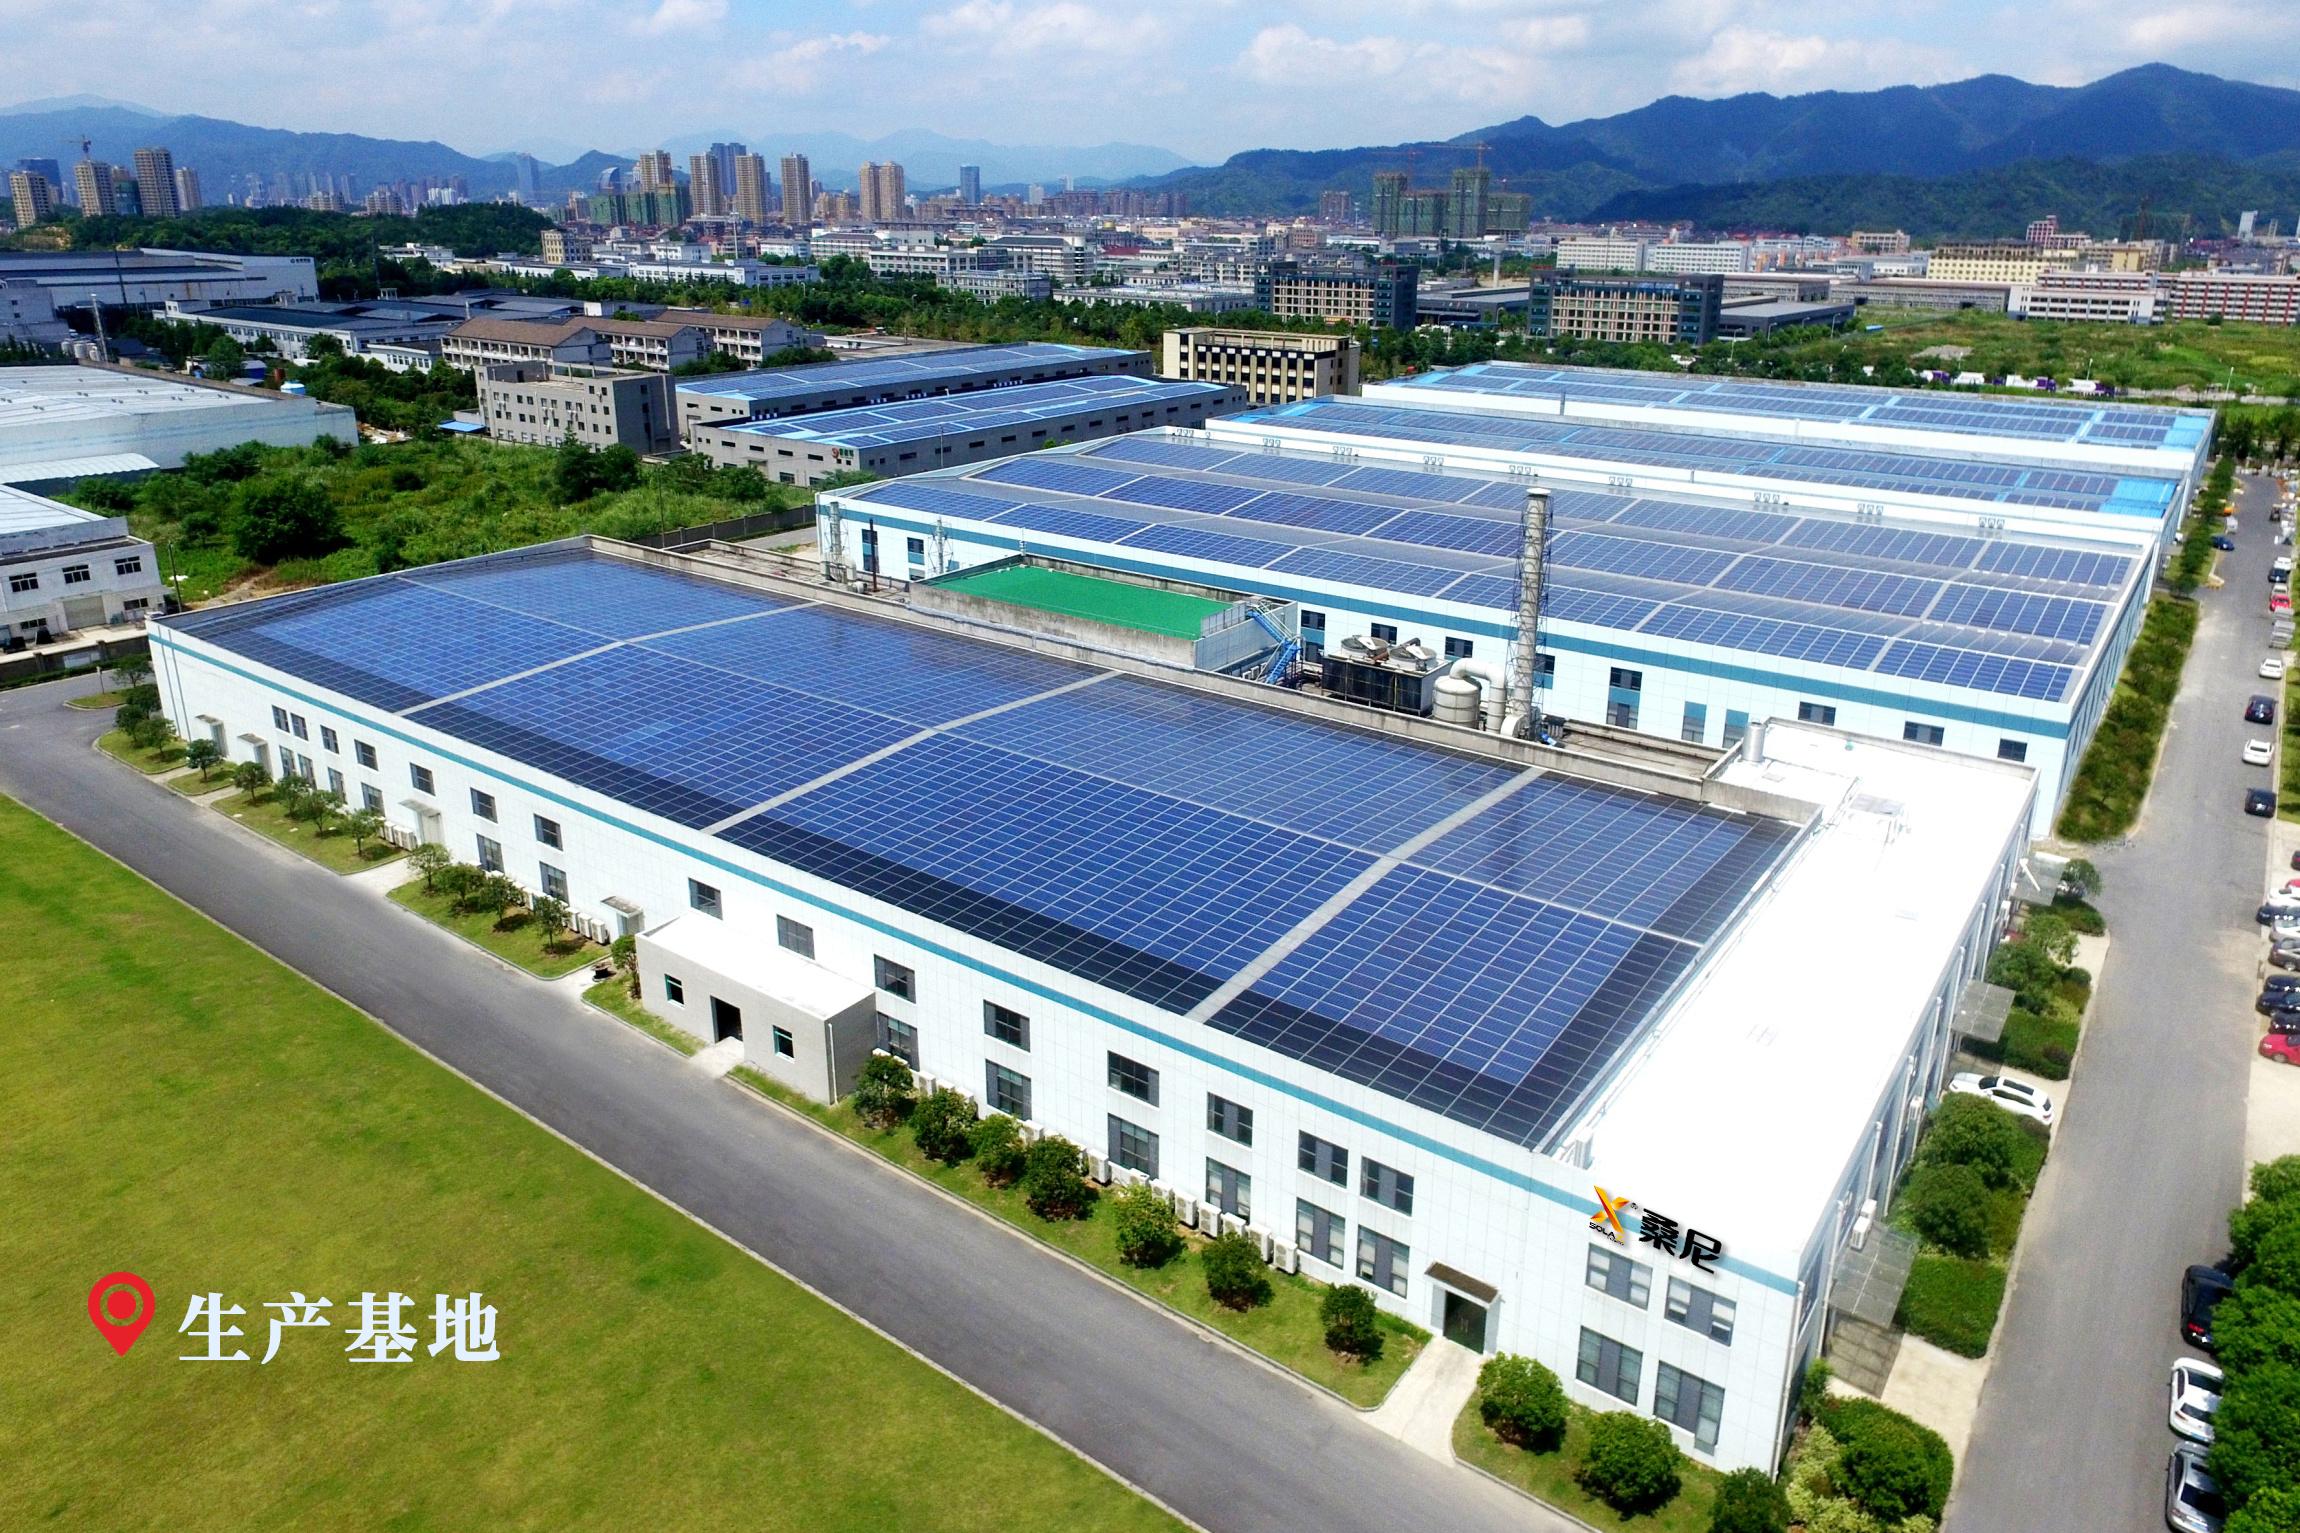 图鉴 | 在七万平米厂房顶上铺满太阳能板的壮观场面-搜狐